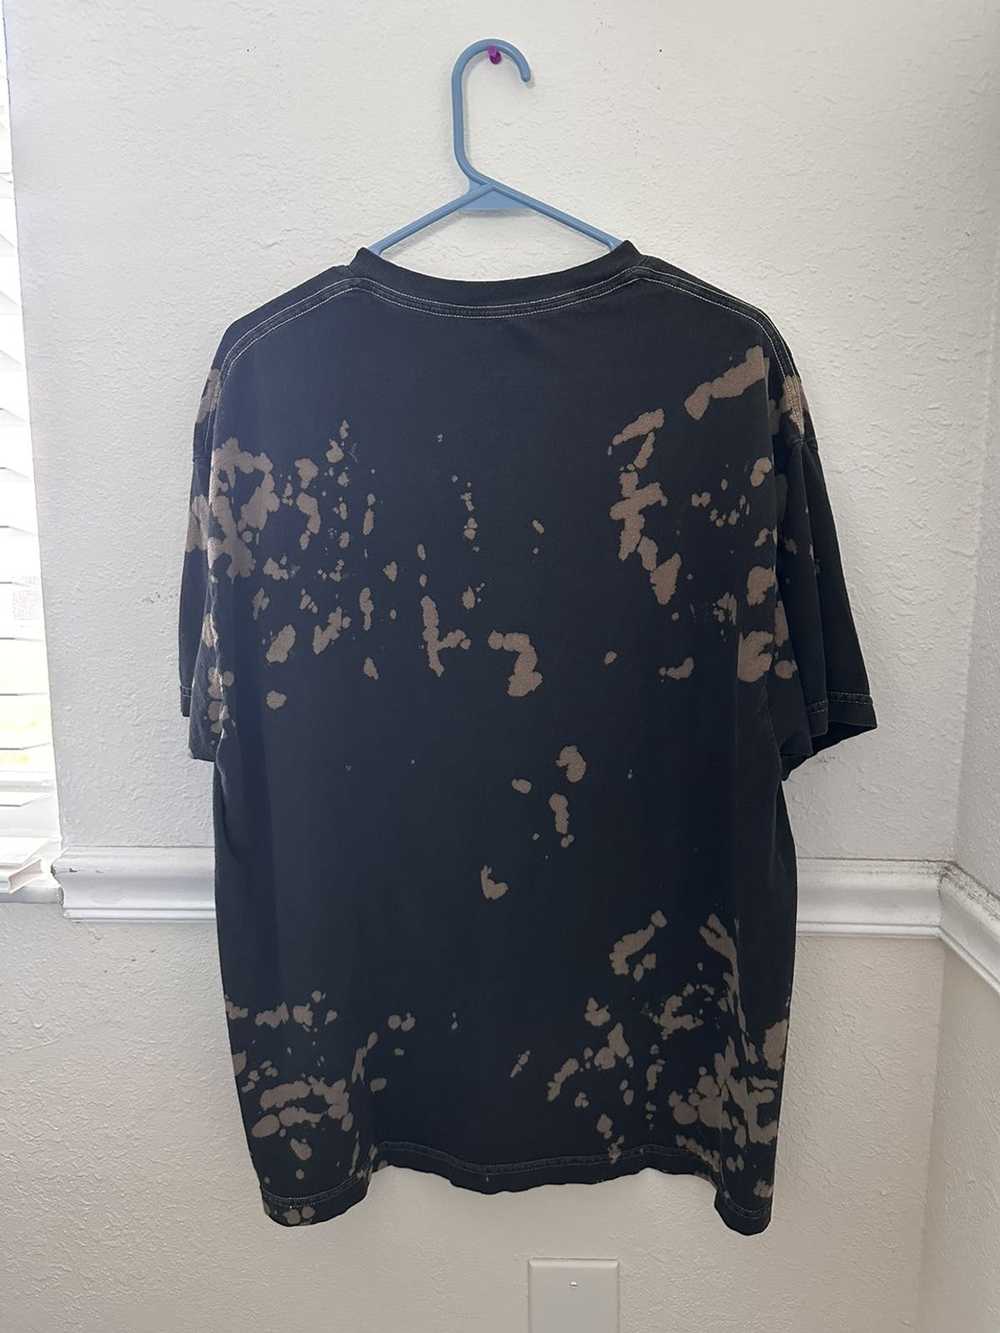 Pacsun bleach splatter t-shirt - image 2